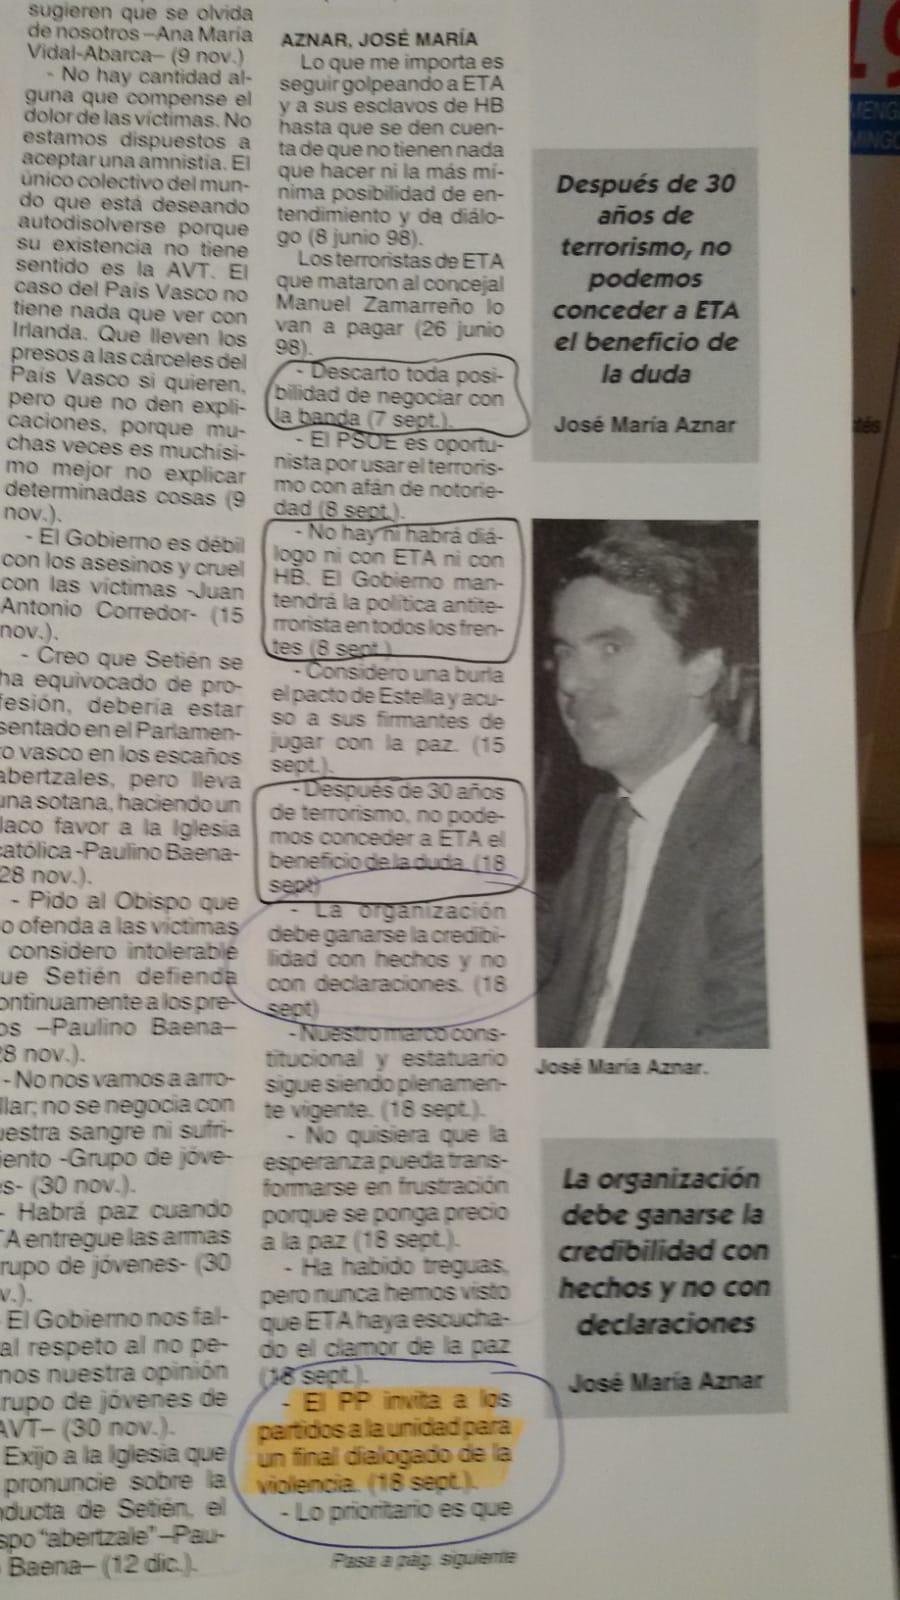 Recopilación de las declaraciones de Aznar.